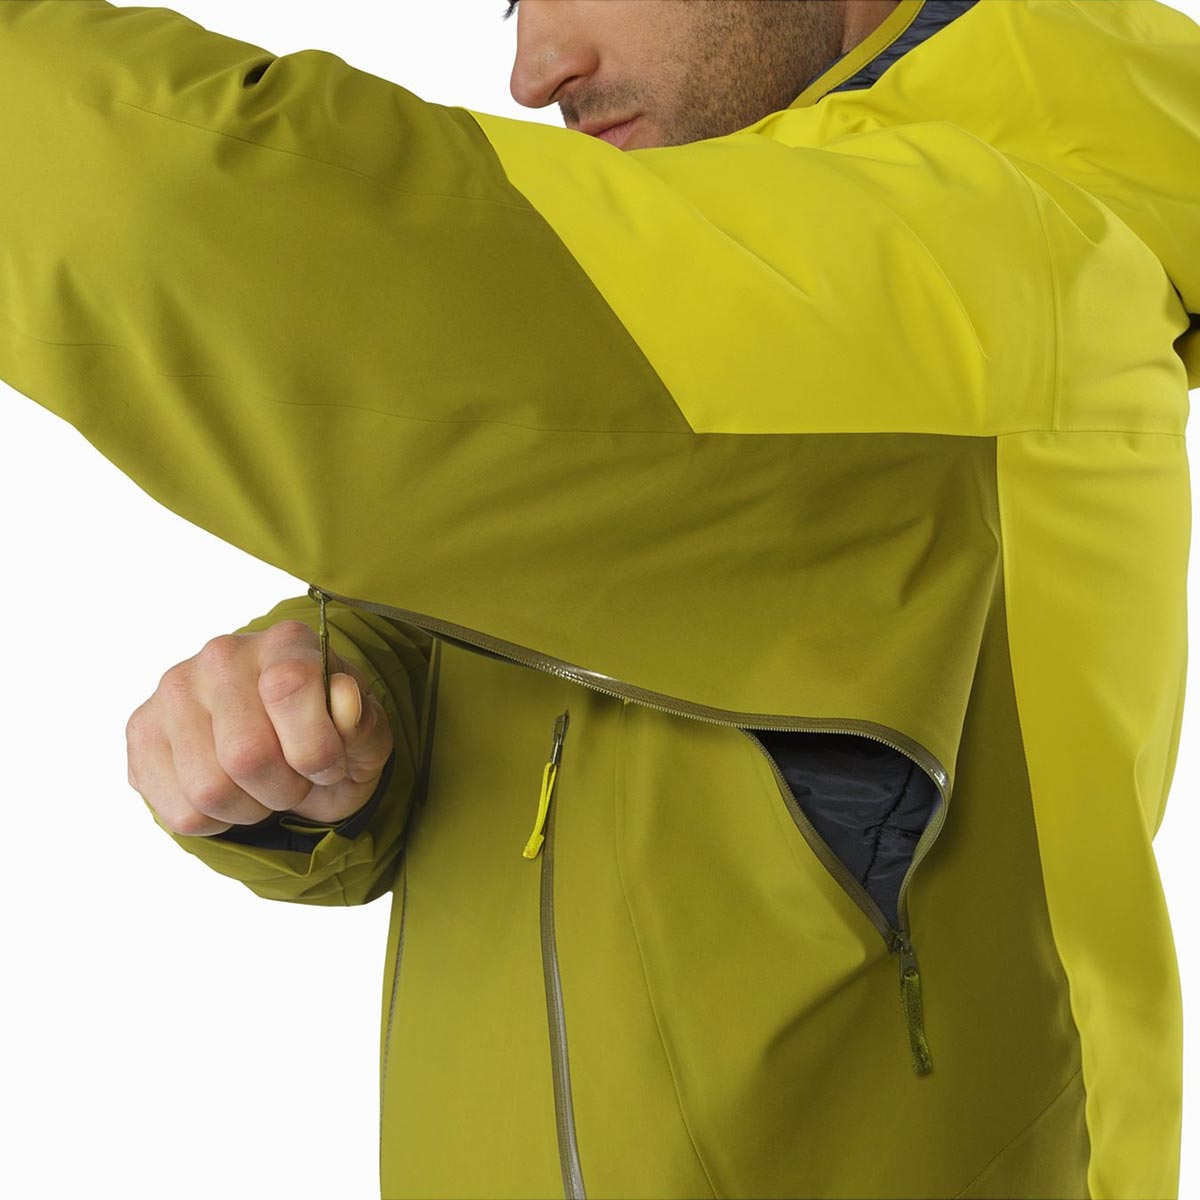 Arc'teryx Sabre LT Jacket, men's, discontinued Fall 2018 colors (free ...